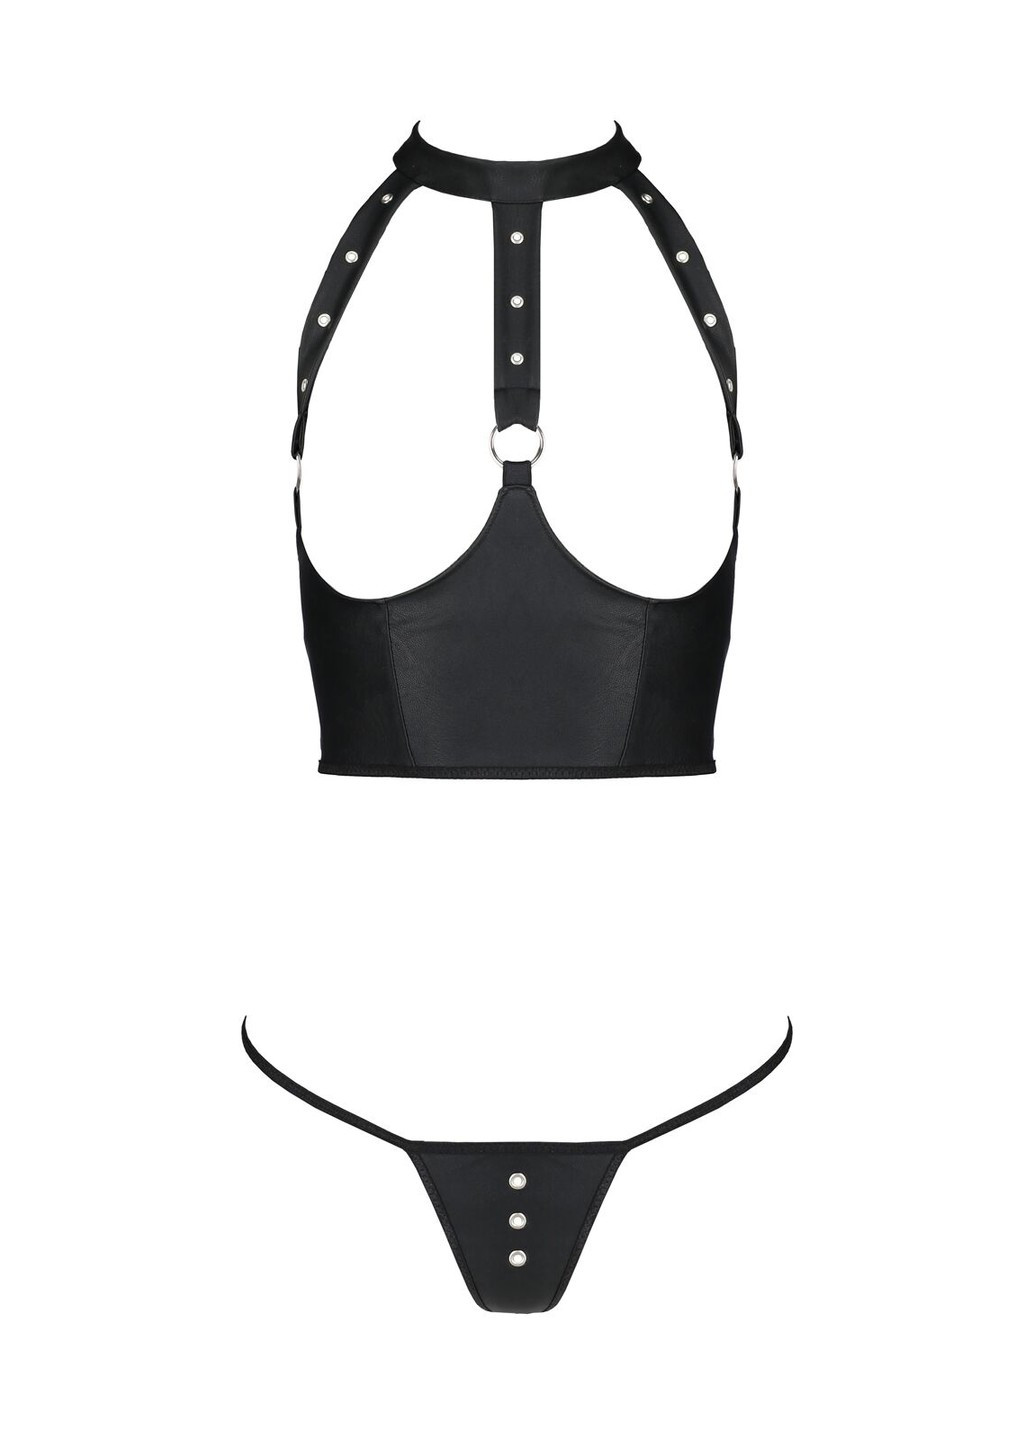 Черный комплект белья с открытой грудью geneviaet with open bra, корсет, стринги Passion